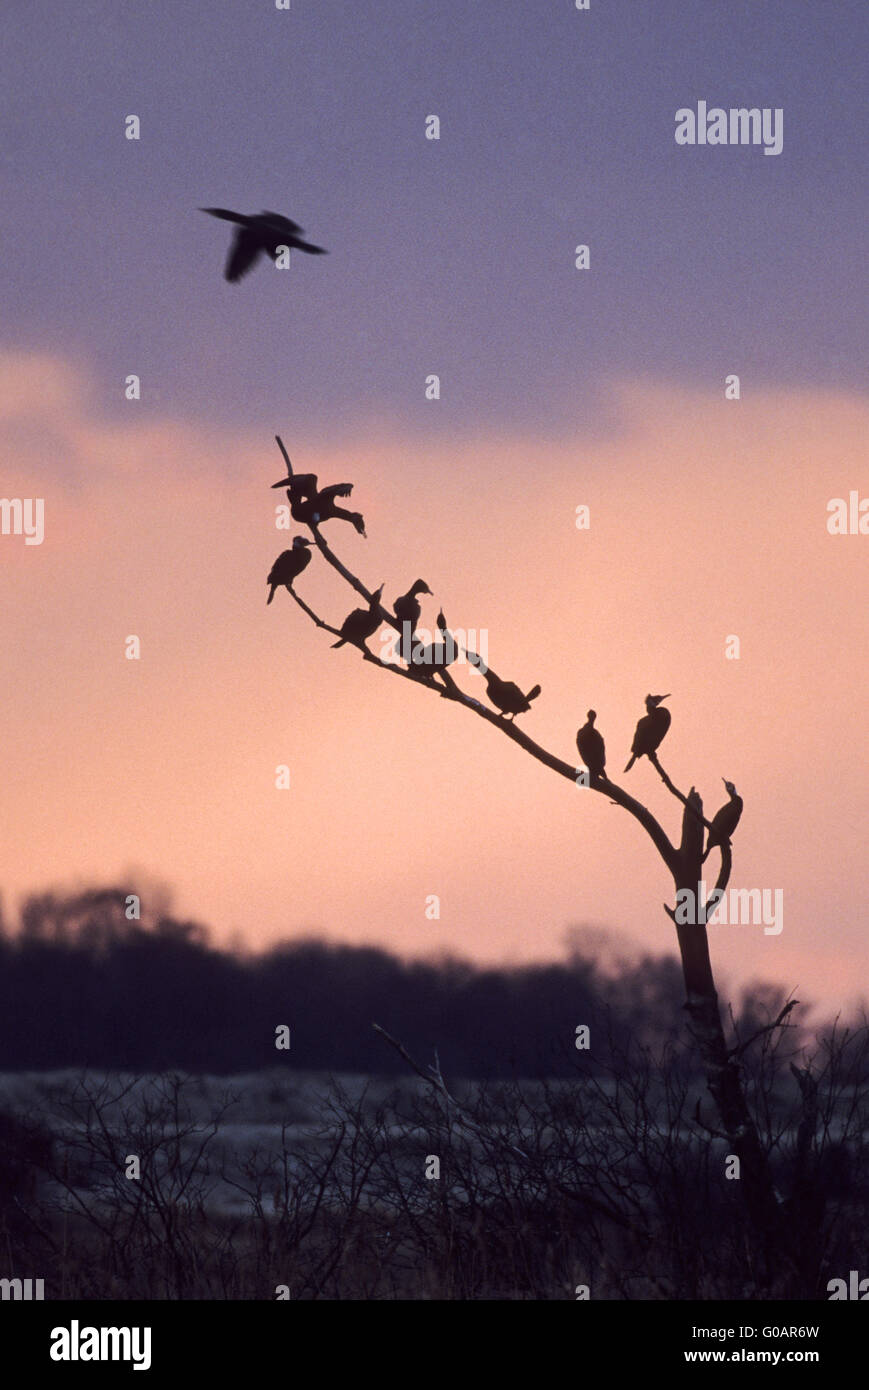 Rassemblement de grands cormorans sur un arbre Banque D'Images